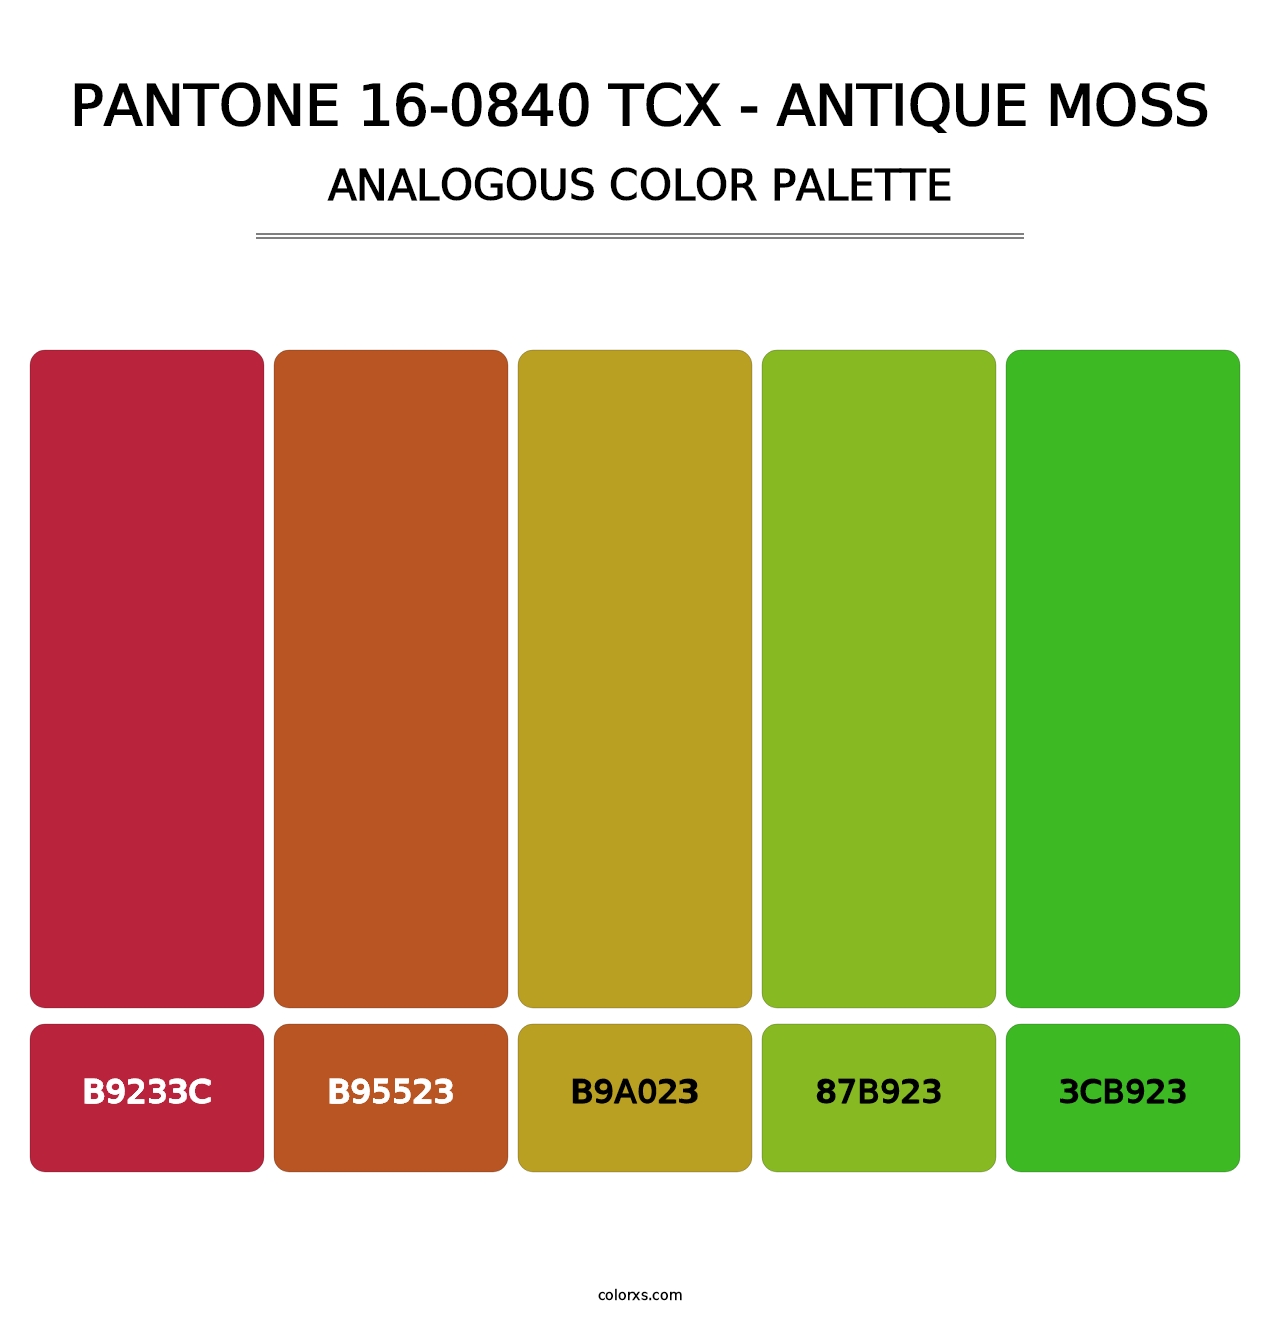 PANTONE 16-0840 TCX - Antique Moss - Analogous Color Palette